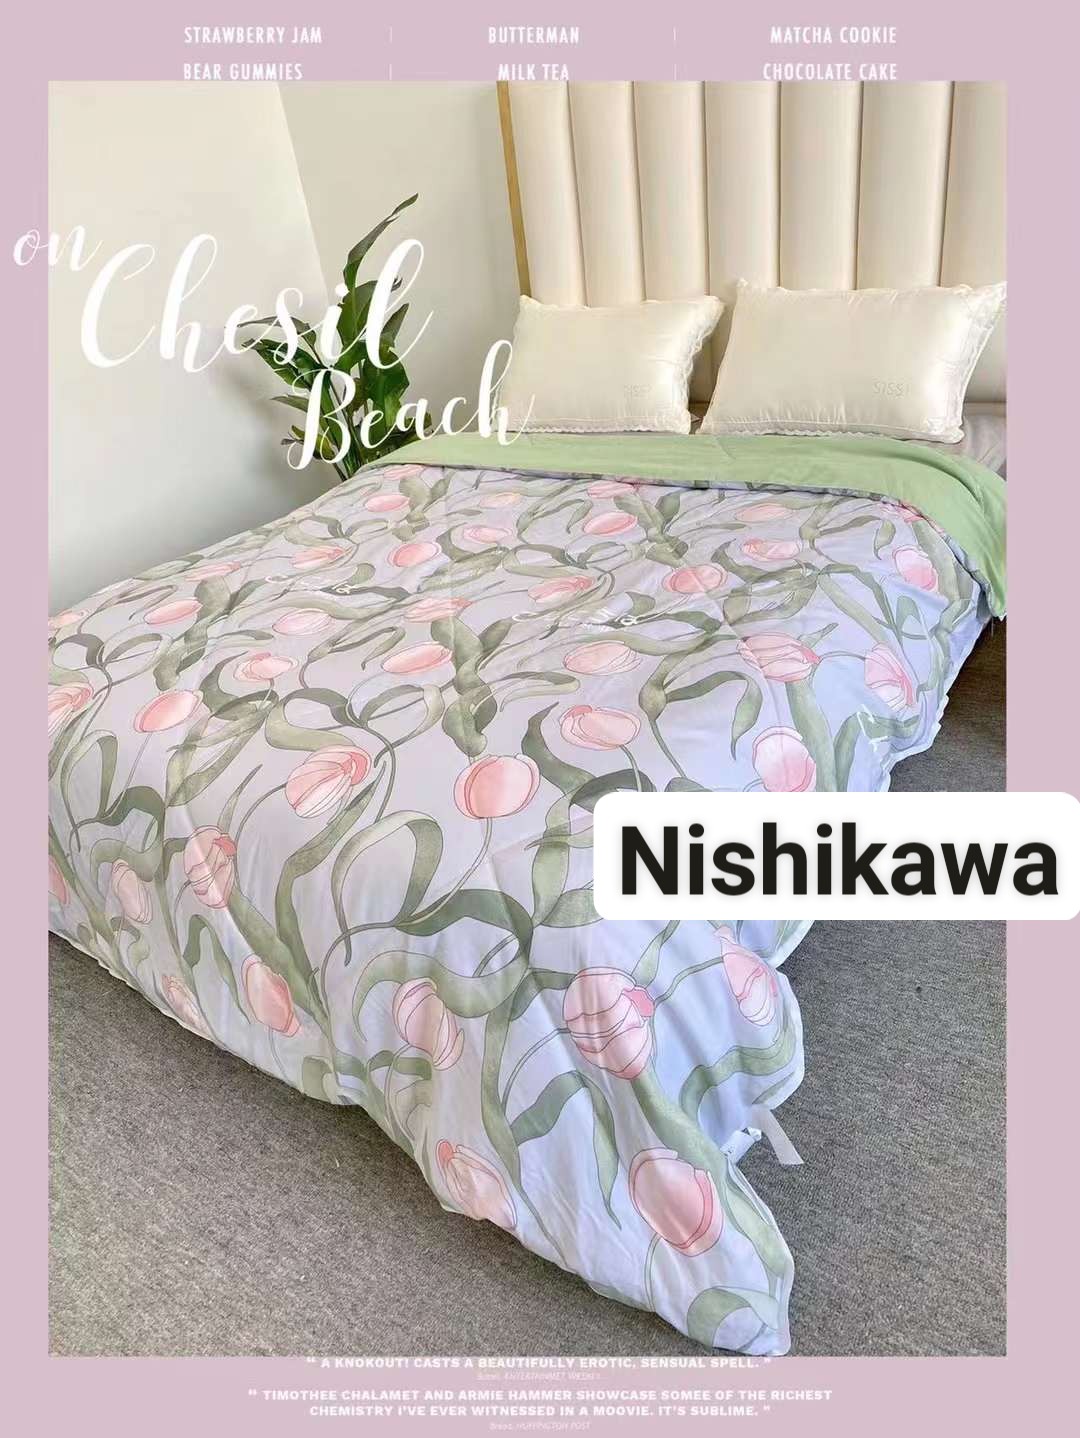 Chăn hè cotton trần bông họa tiết cao cấp  Dream  Nishikwa NSKL02